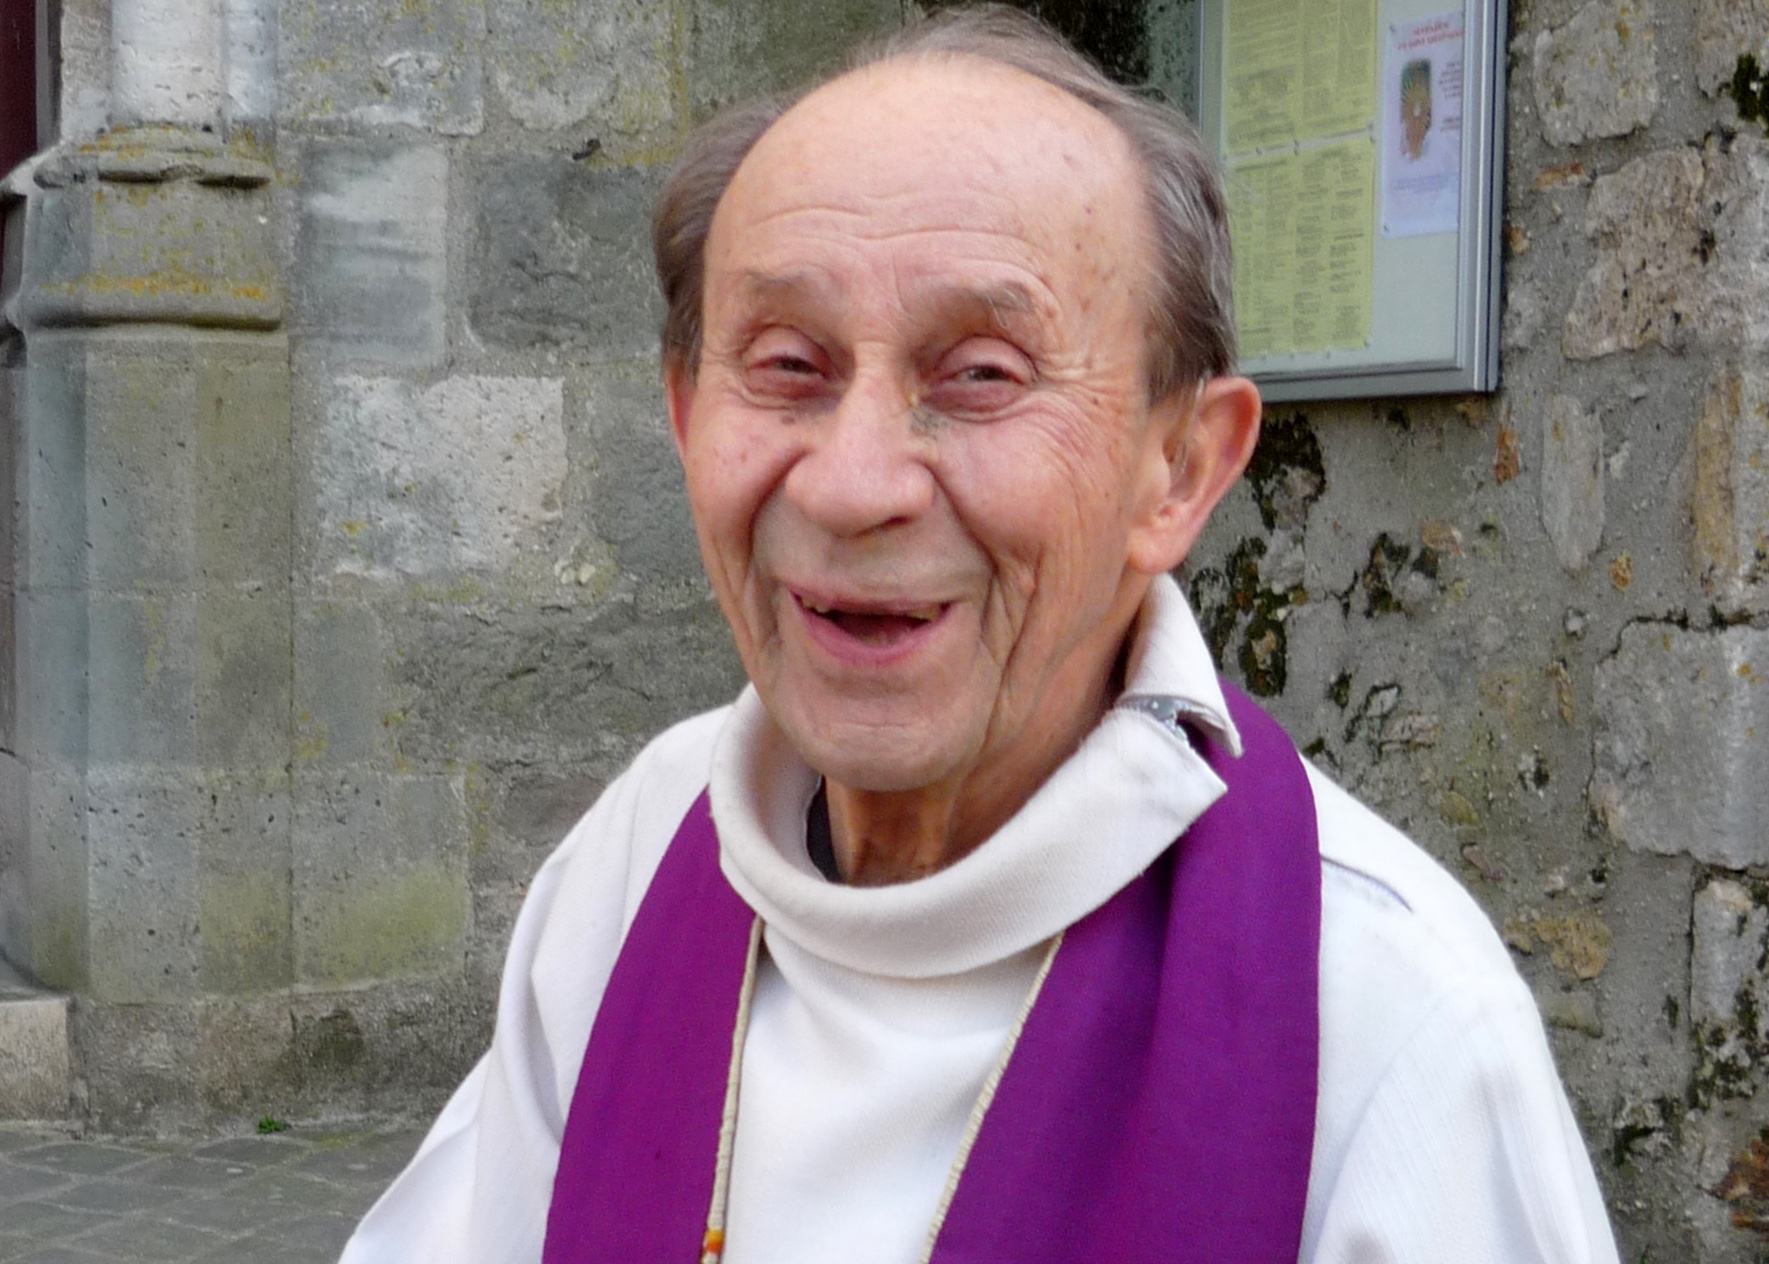 Joyeux anniversaire père Jacques Pé pour vos 100 ans !